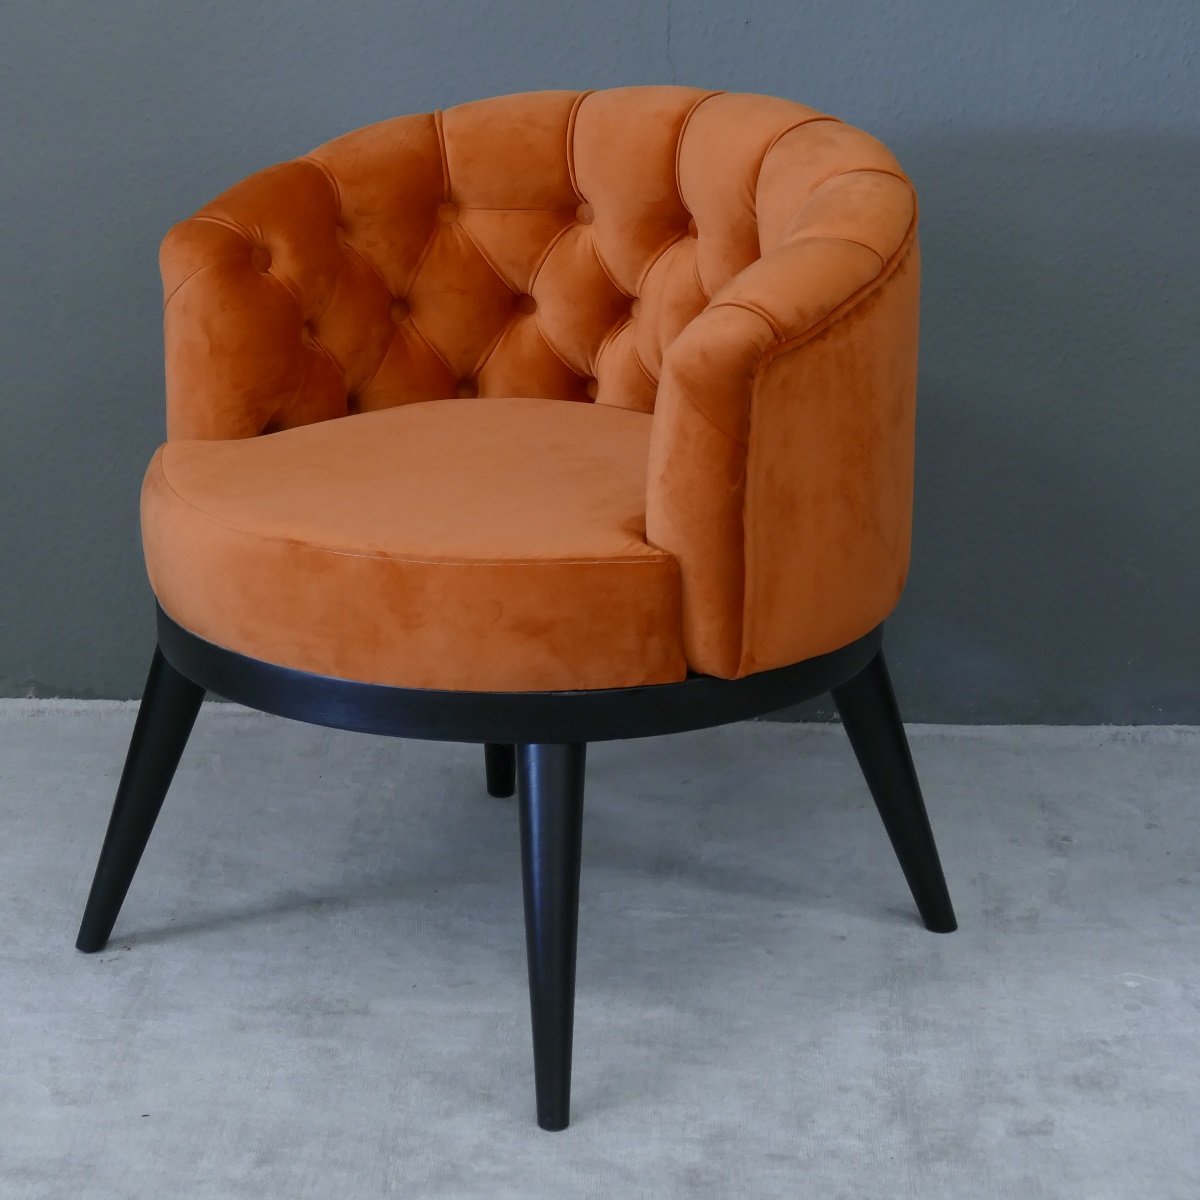 Wunderschöner Sessel rund Samt Farbe orange